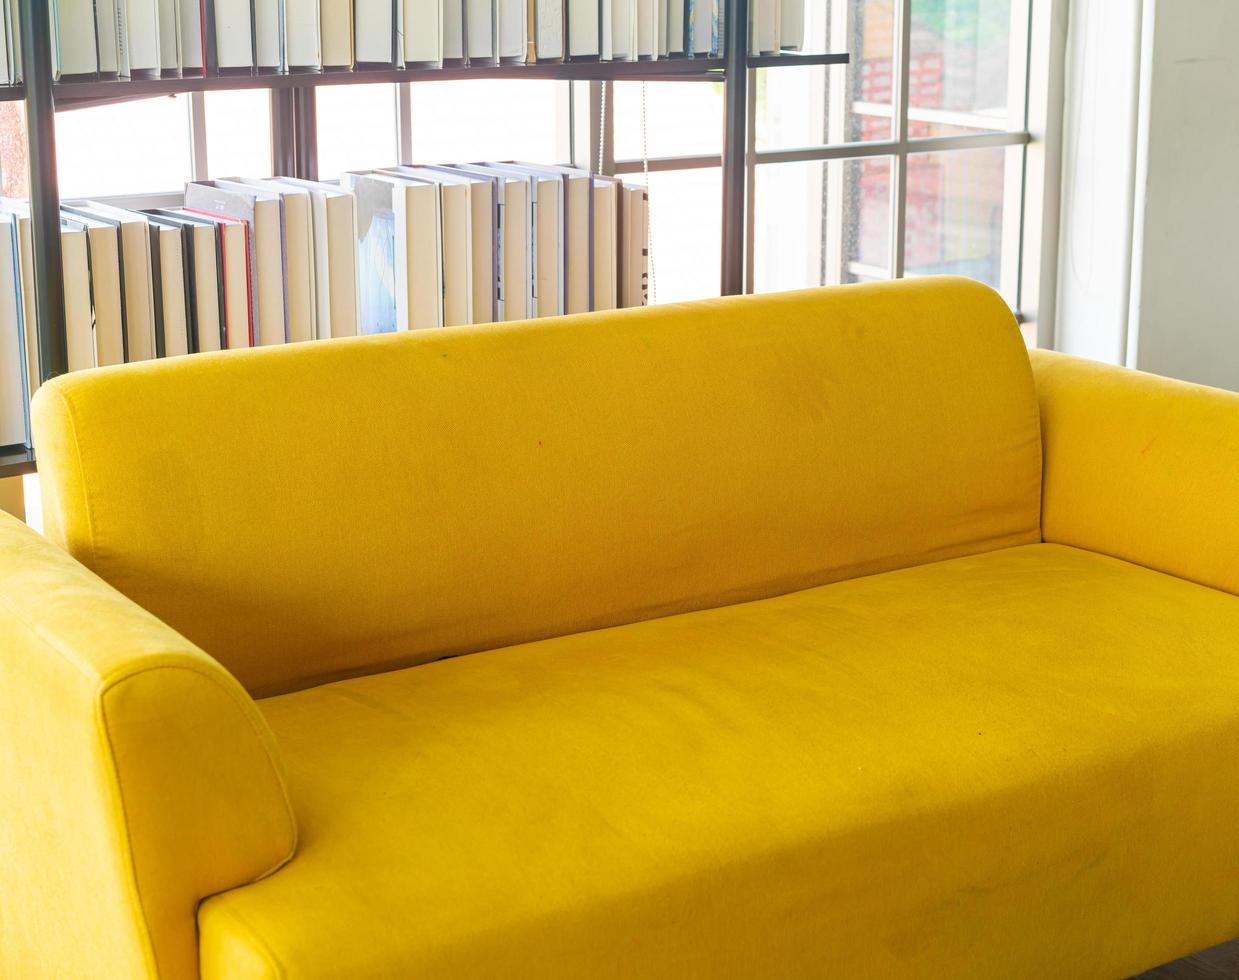 décoration de canapé jaune vide dans une chambre photo